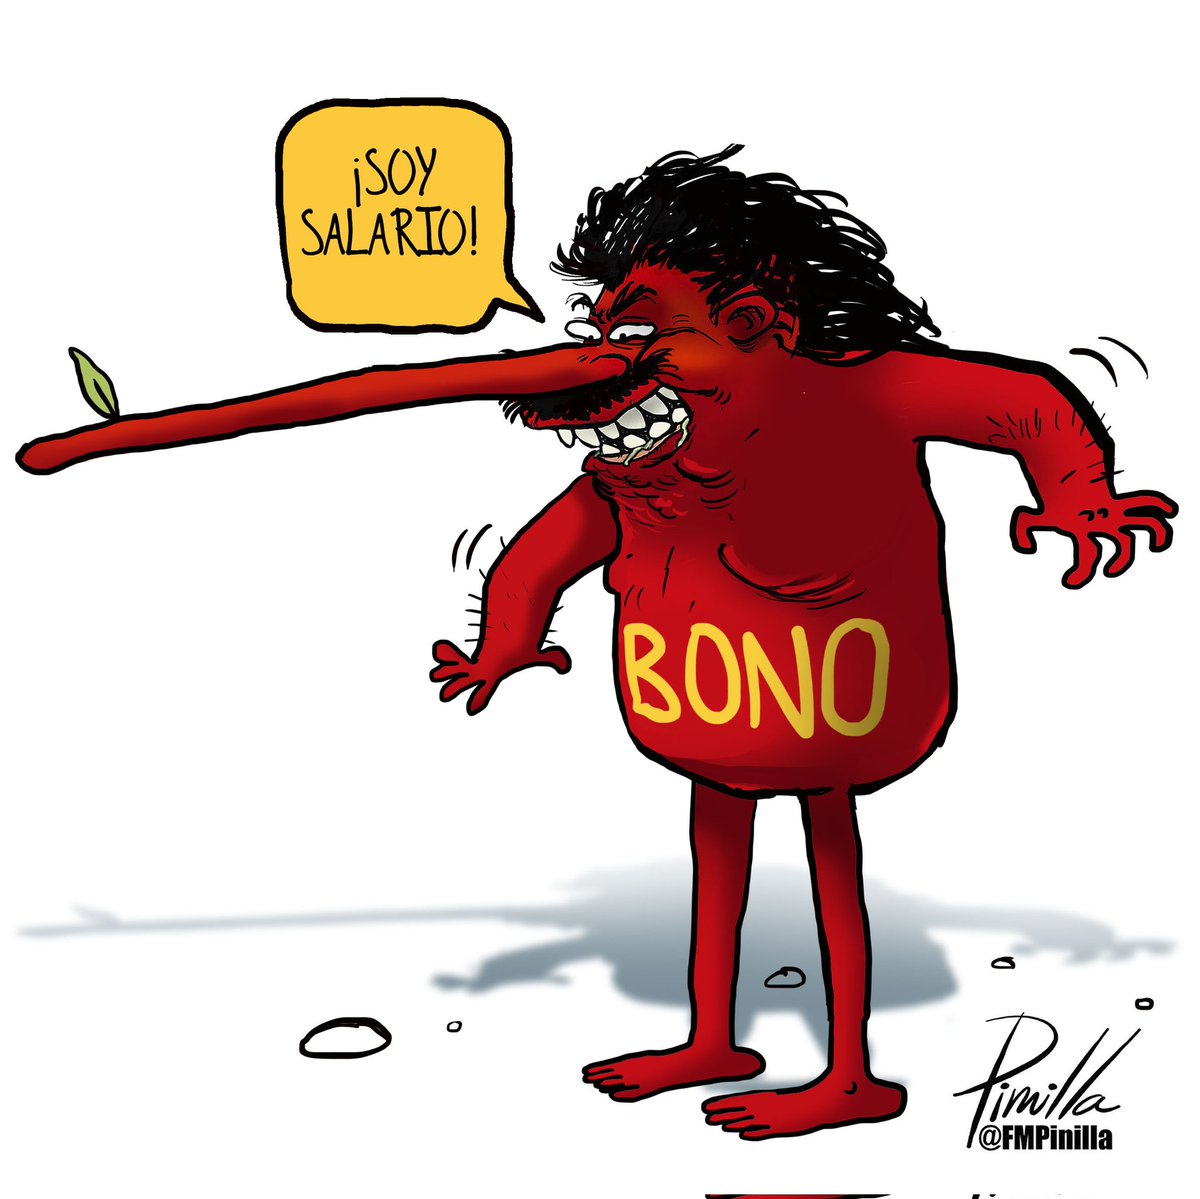 Repita conmigo: ¡Bono no es salario!
•
#Caricatura para @elnacionalweb 
•
#Caricatura #cartoon #Venezuela #venezolanos #politicalcartoon #BonoNoEsSalario